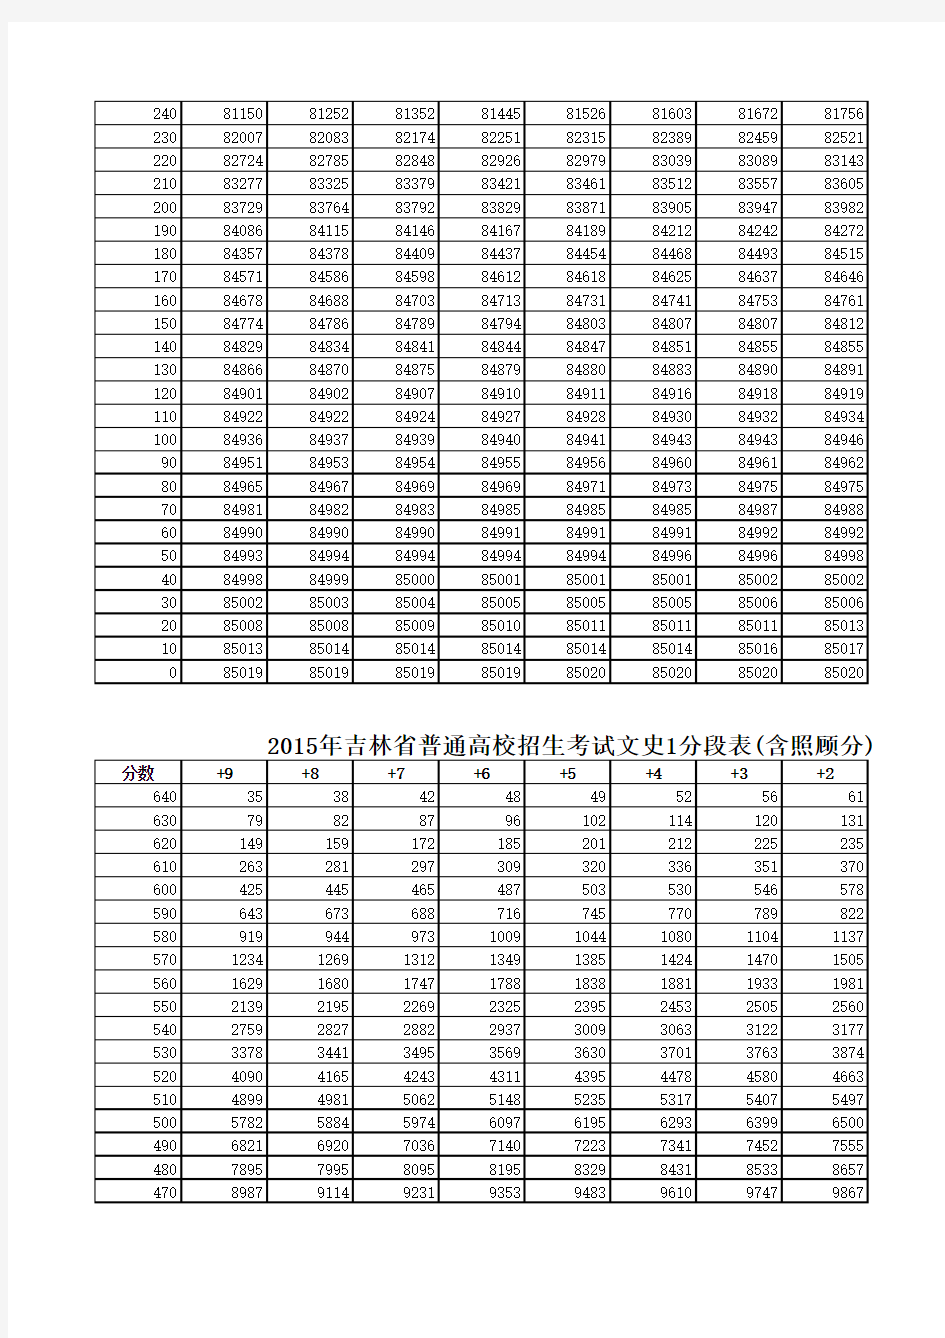 2015吉林高考各科成绩排名分段统计表